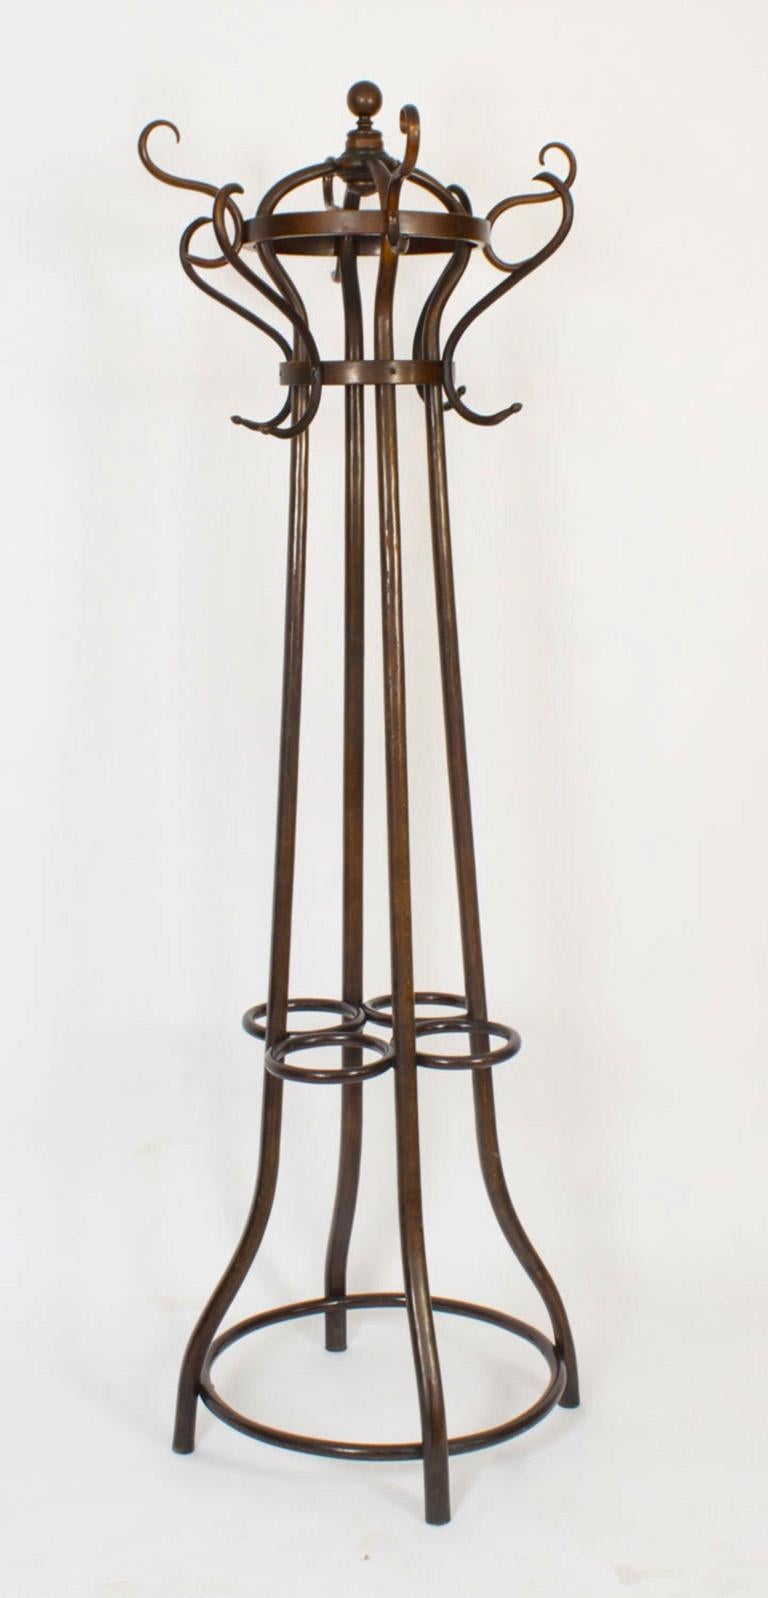 Une excellente et rare paire de porte-manteaux / chapeaux / bâtons en bois courbé monté en bronze doré, de la fin du 19e siècle, de Thonet Vienna Art Nouvean.
La paire de  Huit patères en hêtre teinté, en forme d'enroulement en S, entourant quatre